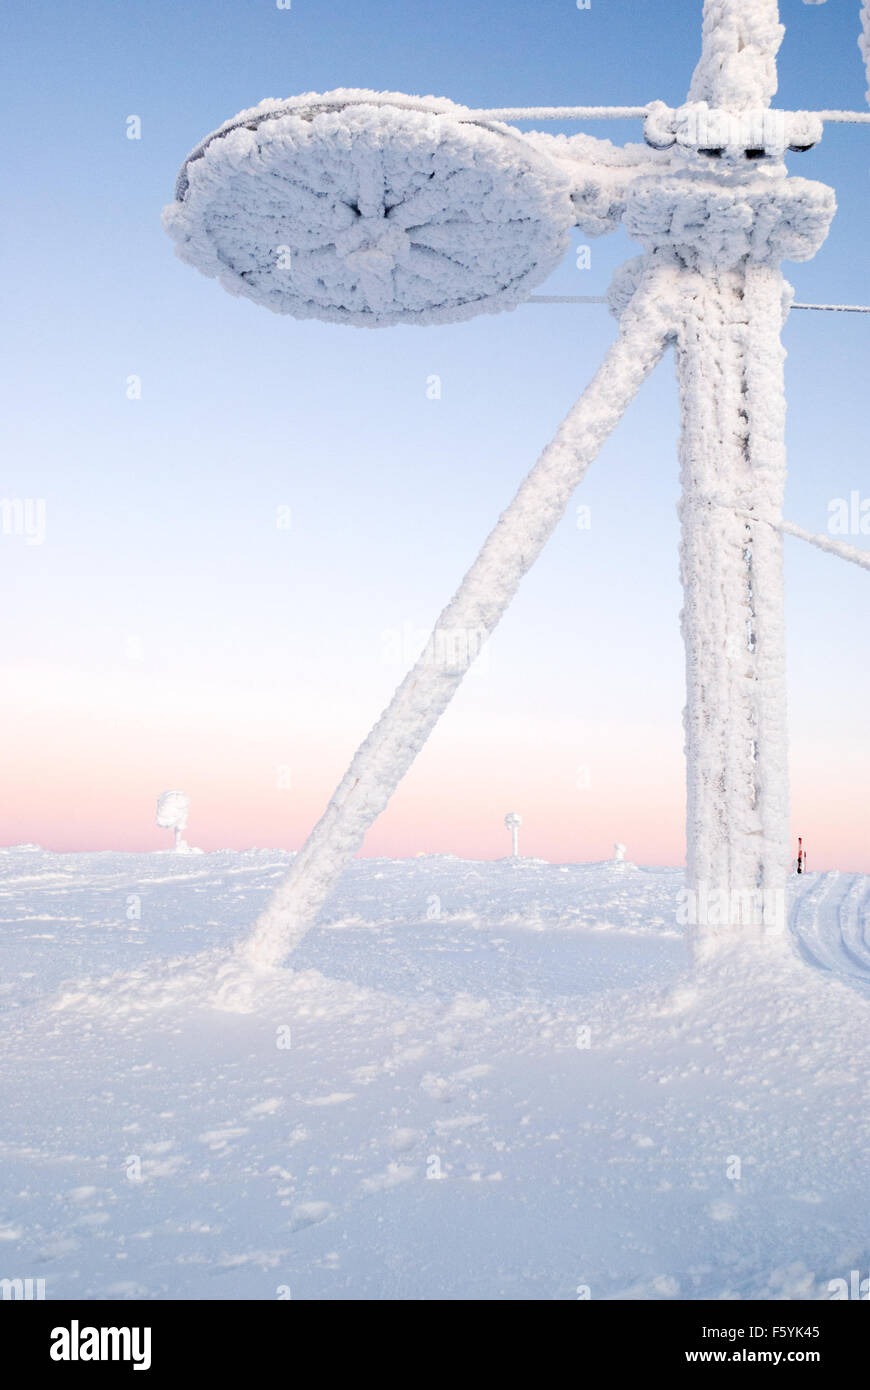 Des scènes d'hiver dans la station de ski de Yllas, la Laponie finlandaise. Gréement de ski couvert de neige Banque D'Images